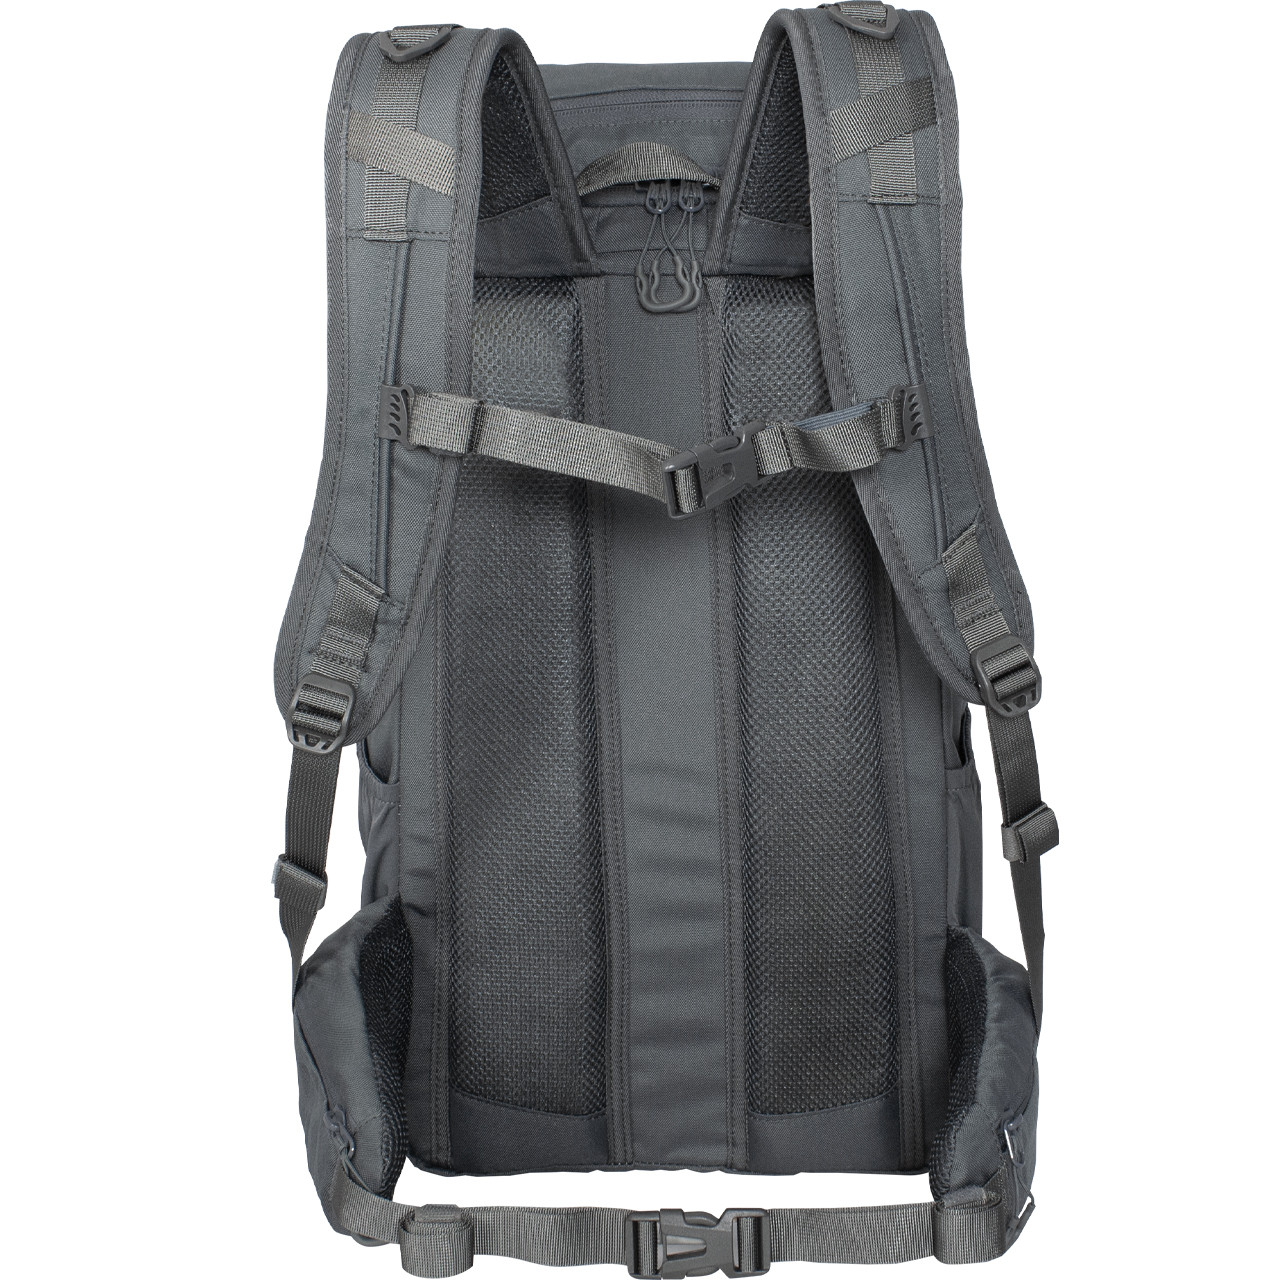 Fhior 30L Tactical Backpack - Tornado